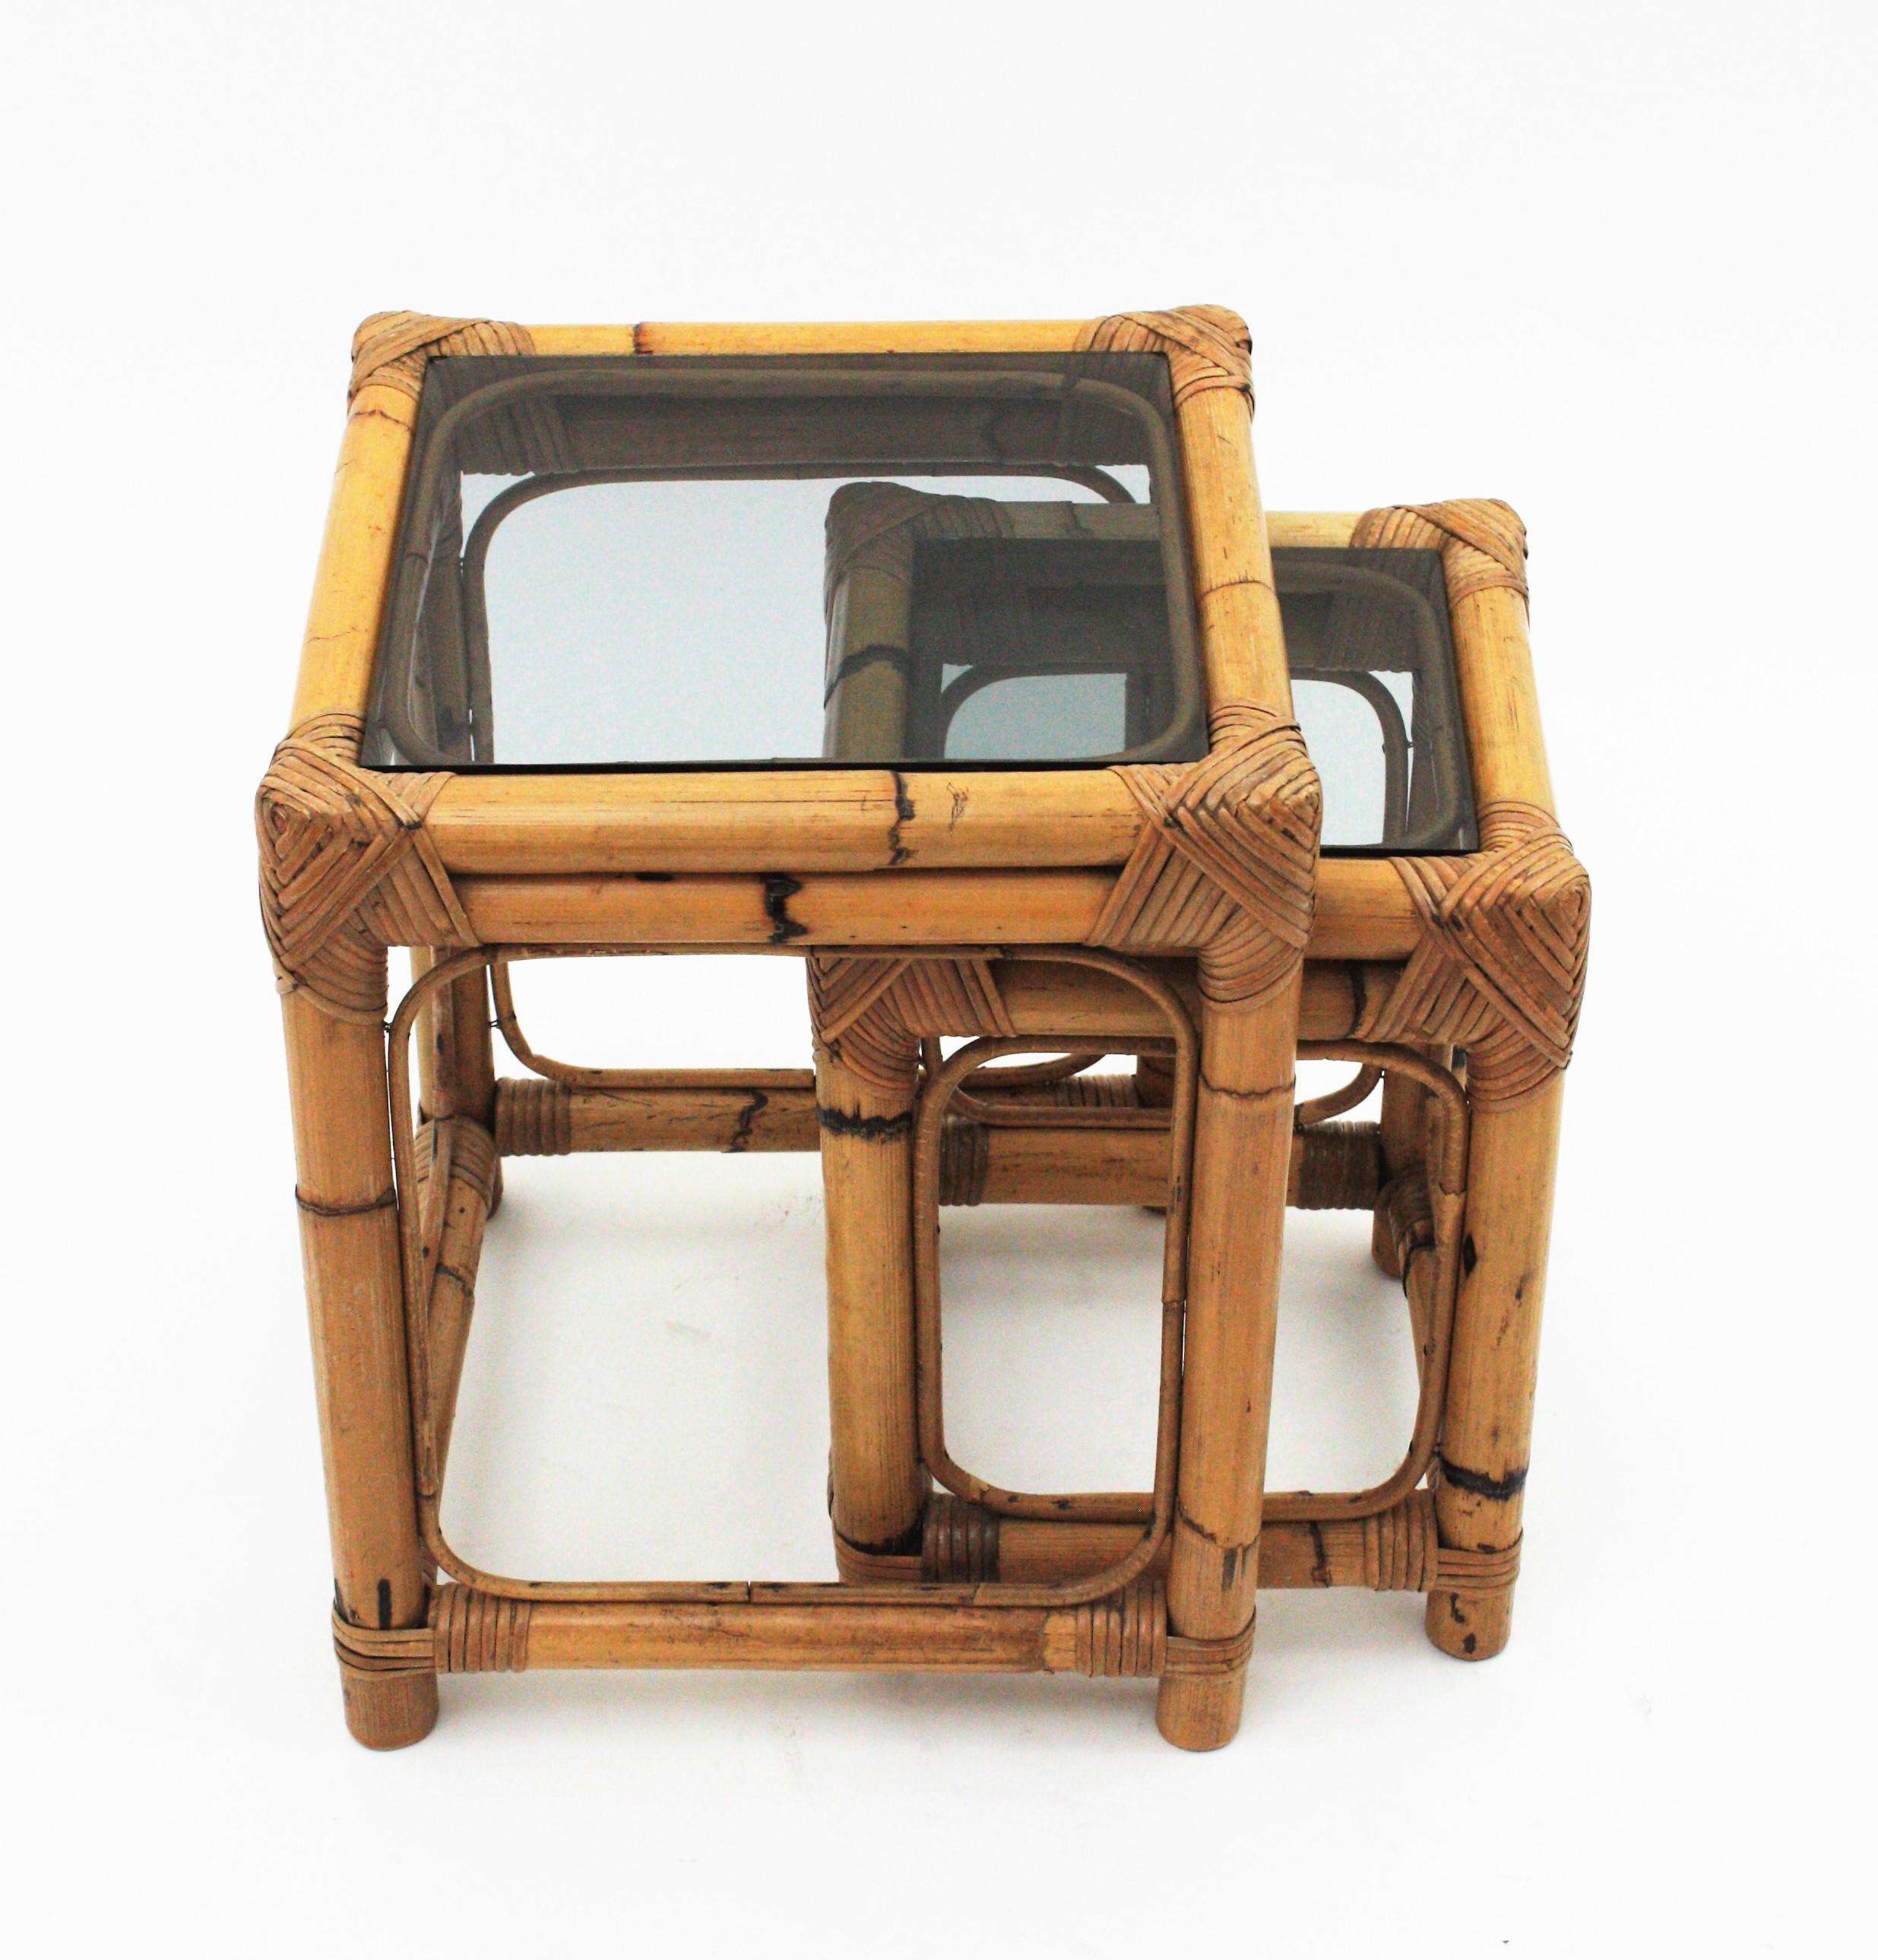 Satz von zwei Tischen aus Bambus und Rauchglas, Spanien, 1960er Jahre.
Wunderschön als Beistelltisch, Beistelltisch oder Endtisch zu verwenden. Diese Nisttische setzen einen frischen und natürlichen Akzent an jedem Ort.
Im Verkauf als